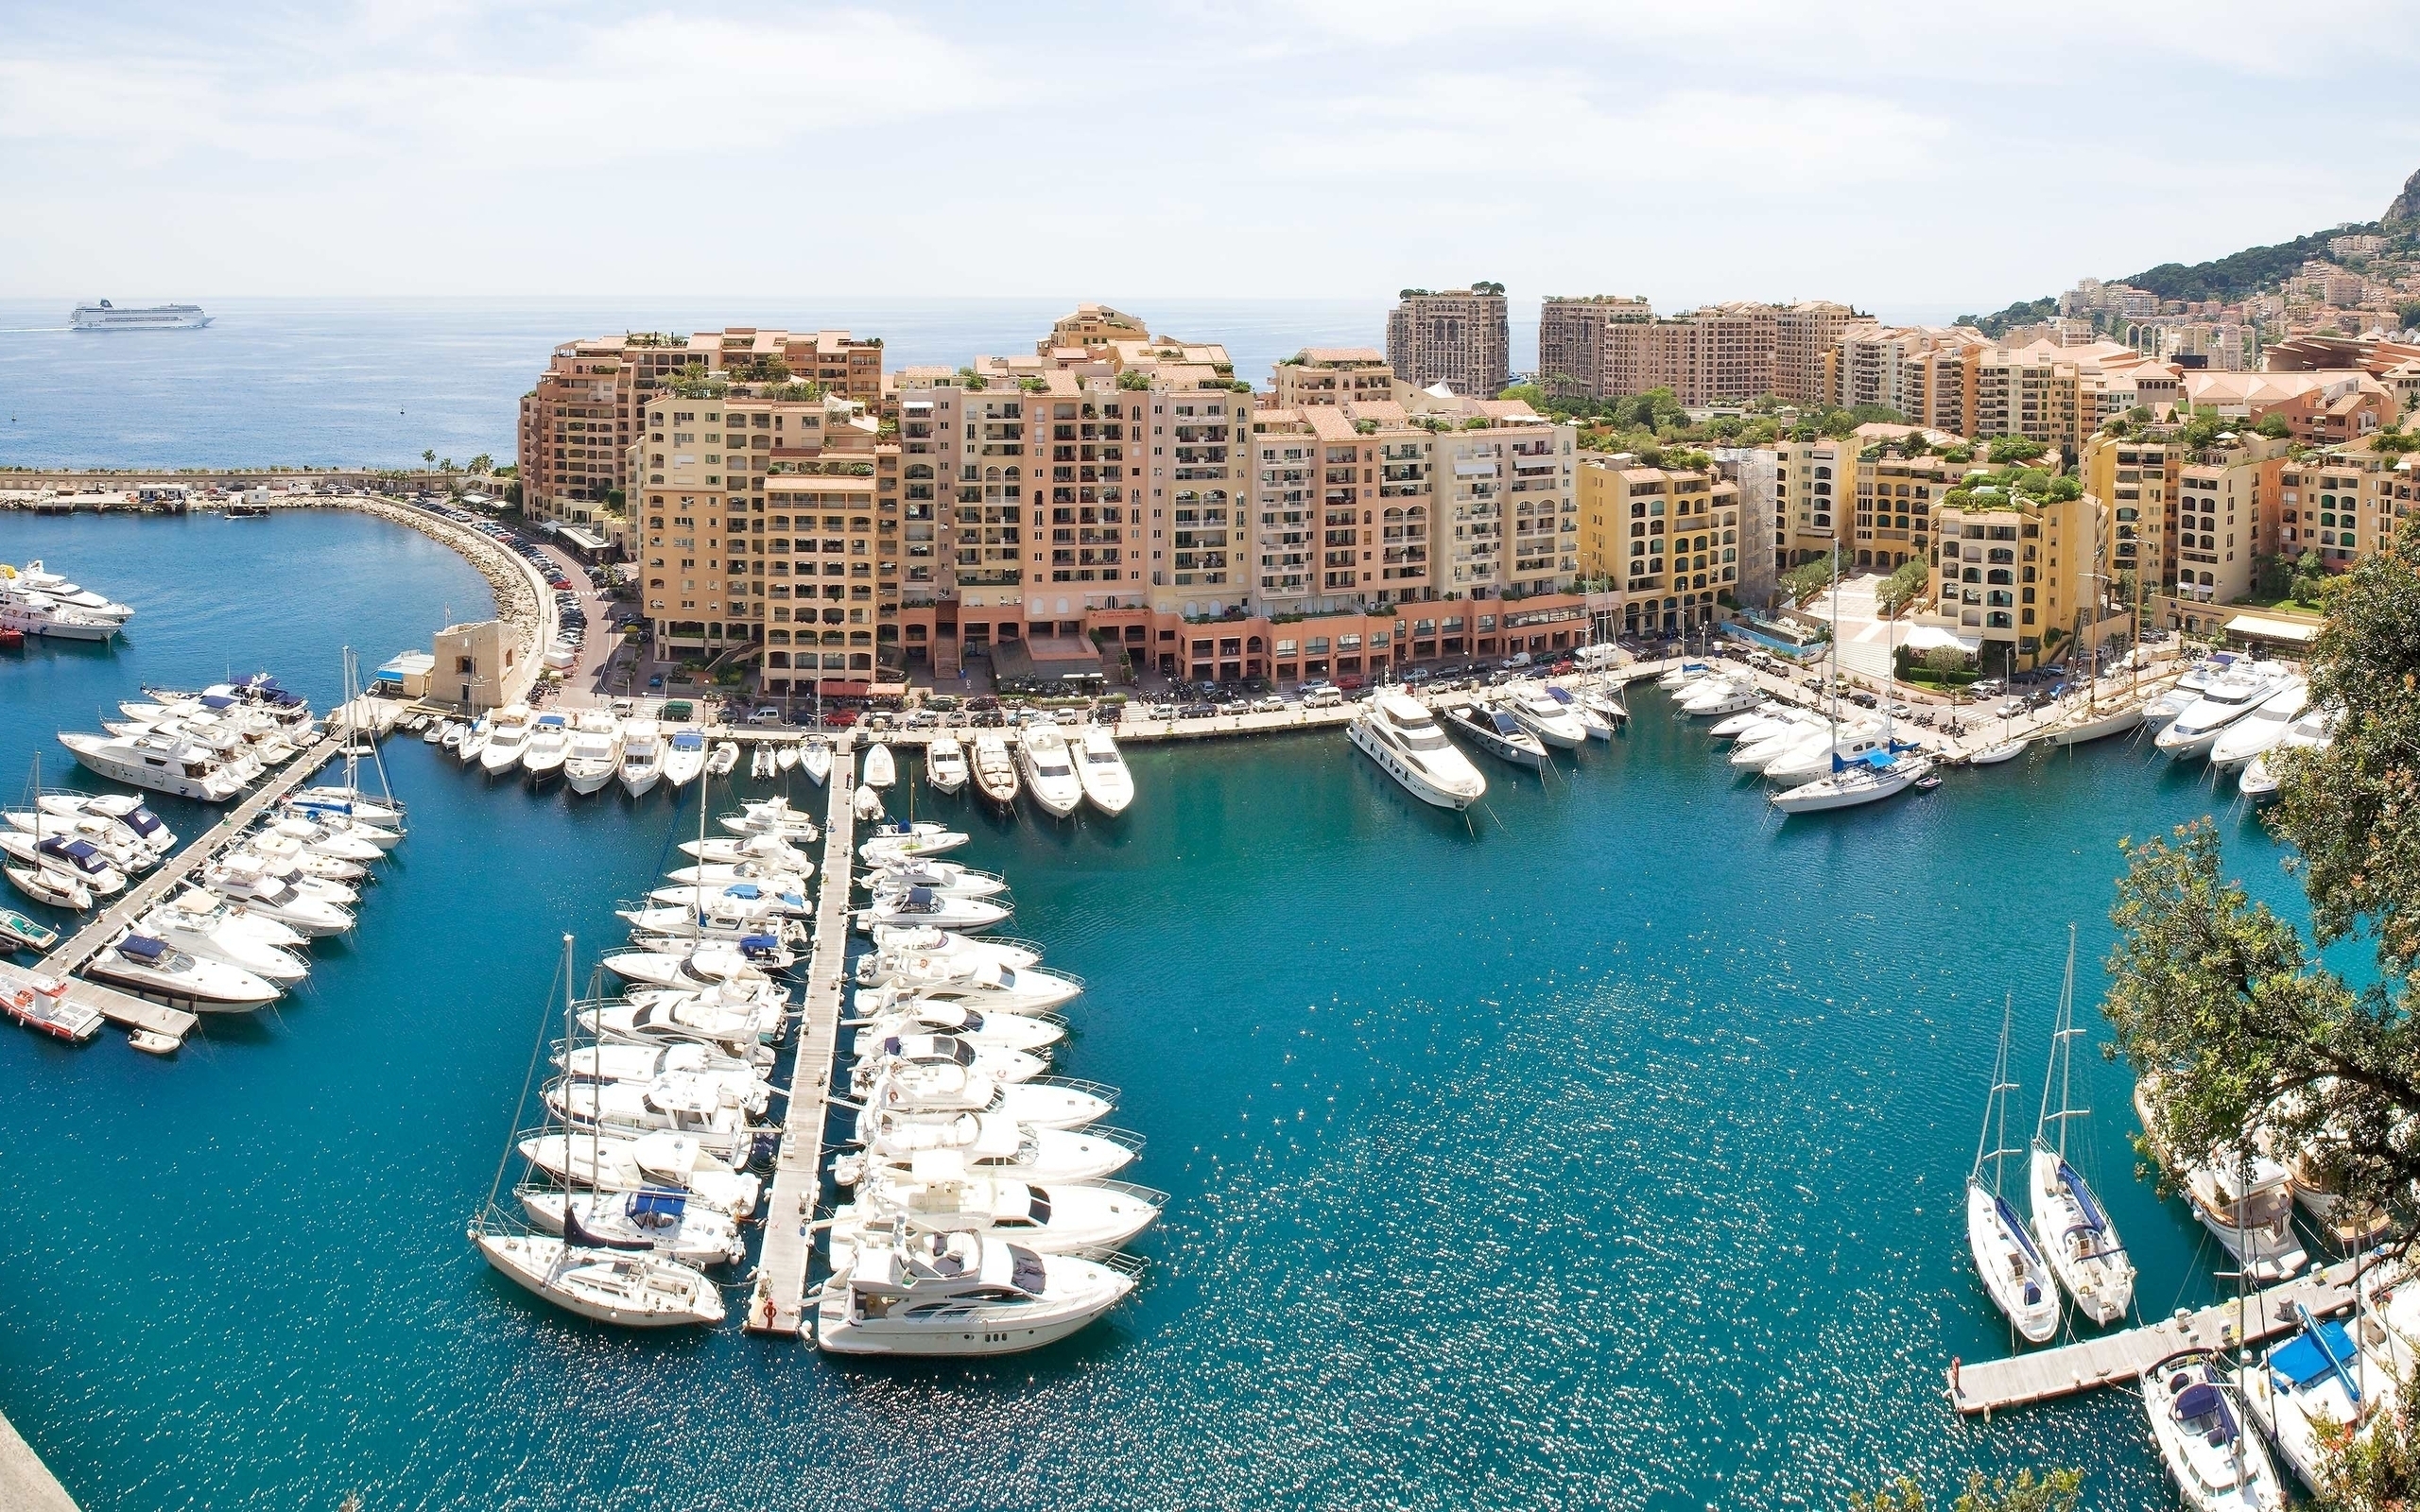 Monaco Port for 2560 x 1600 widescreen resolution